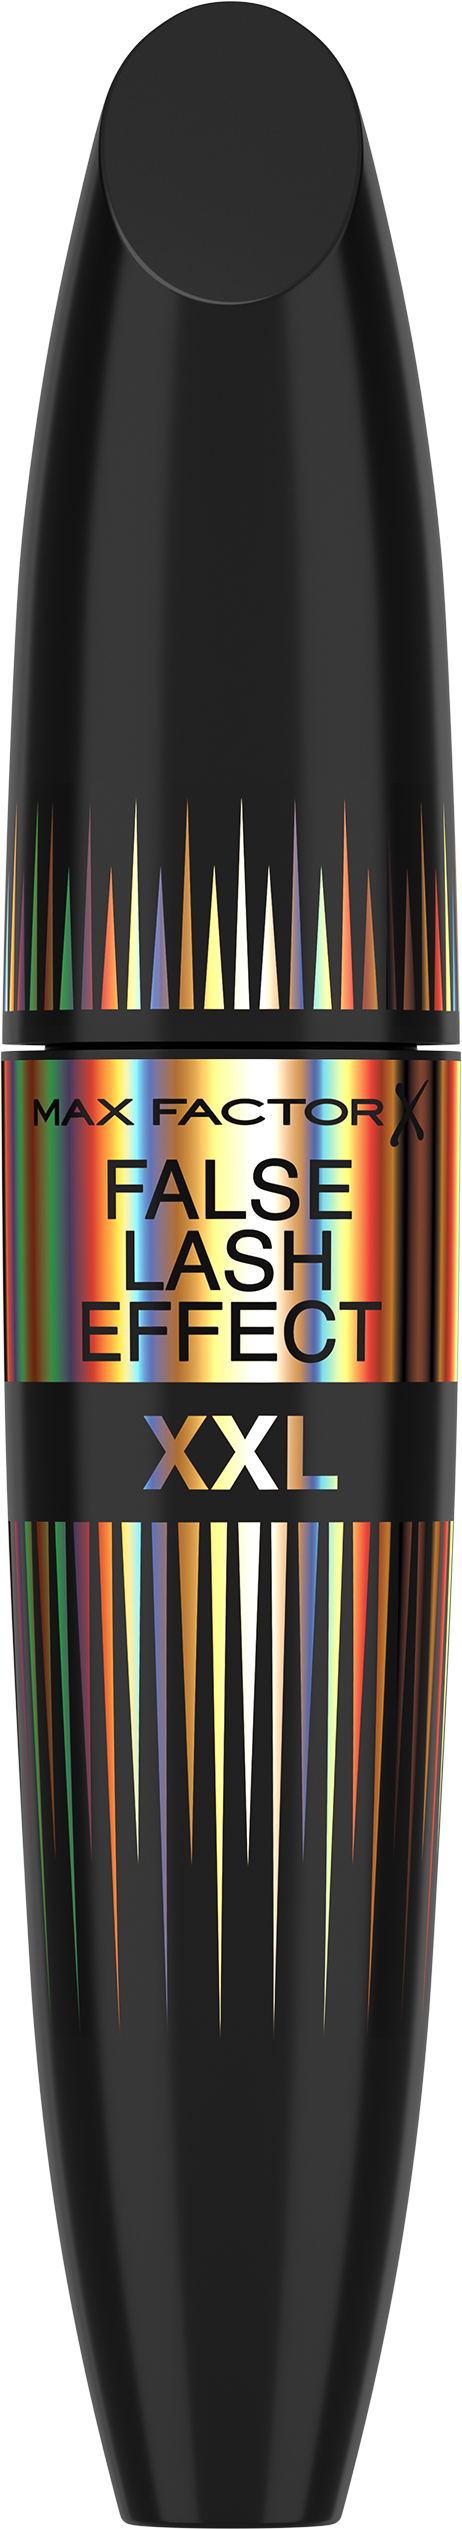 Max Factor, Mascara Volumizzante e Allungante False Lash Effect XXL, Effetto Ciglia Finte, Black